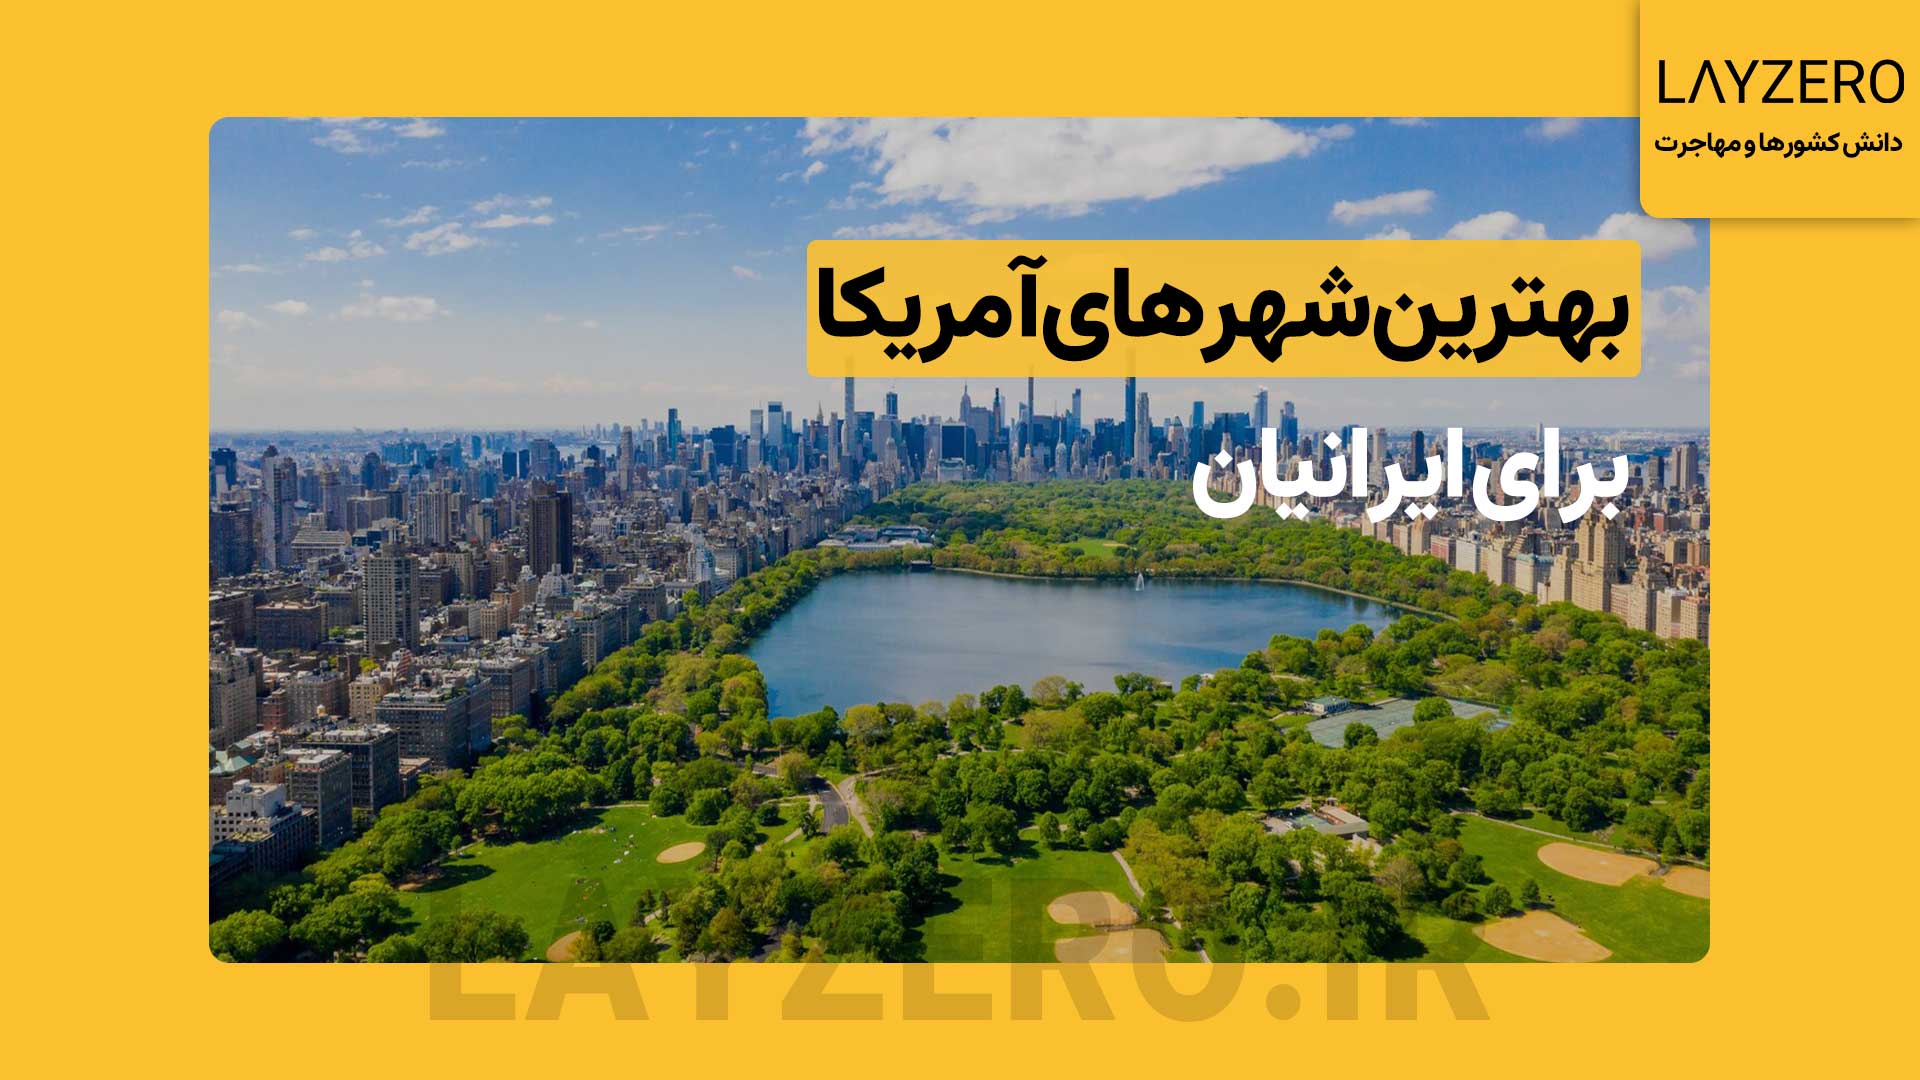 بهترین شهرهای آمریکا برای مهاجرت ایرانیان و برندگان لاتاری بهترین شهرهای آمریکا برای مهاجرت ایرانیان و برندگان لاتاری به ترتیب نیویورک، لس آنجلس، دالاس، آستین، سیاتل، لاس وگاس و آلباکرکی است.